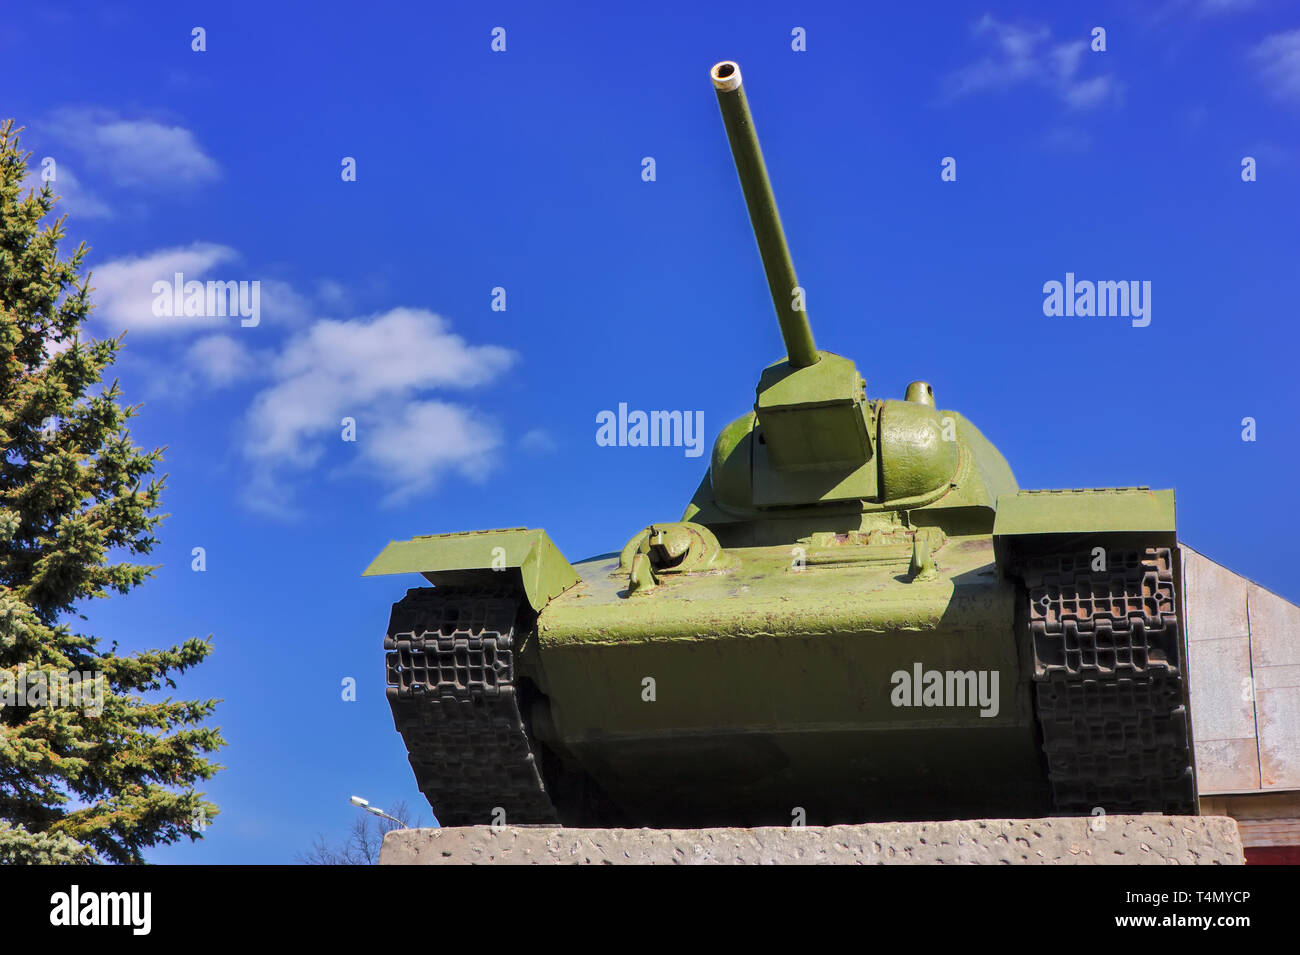 Sowjetischer Panzer T-34 im Krieg im zweiten Weltkrieg auf dem Hintergrund des blauen Himmels. Stockfoto